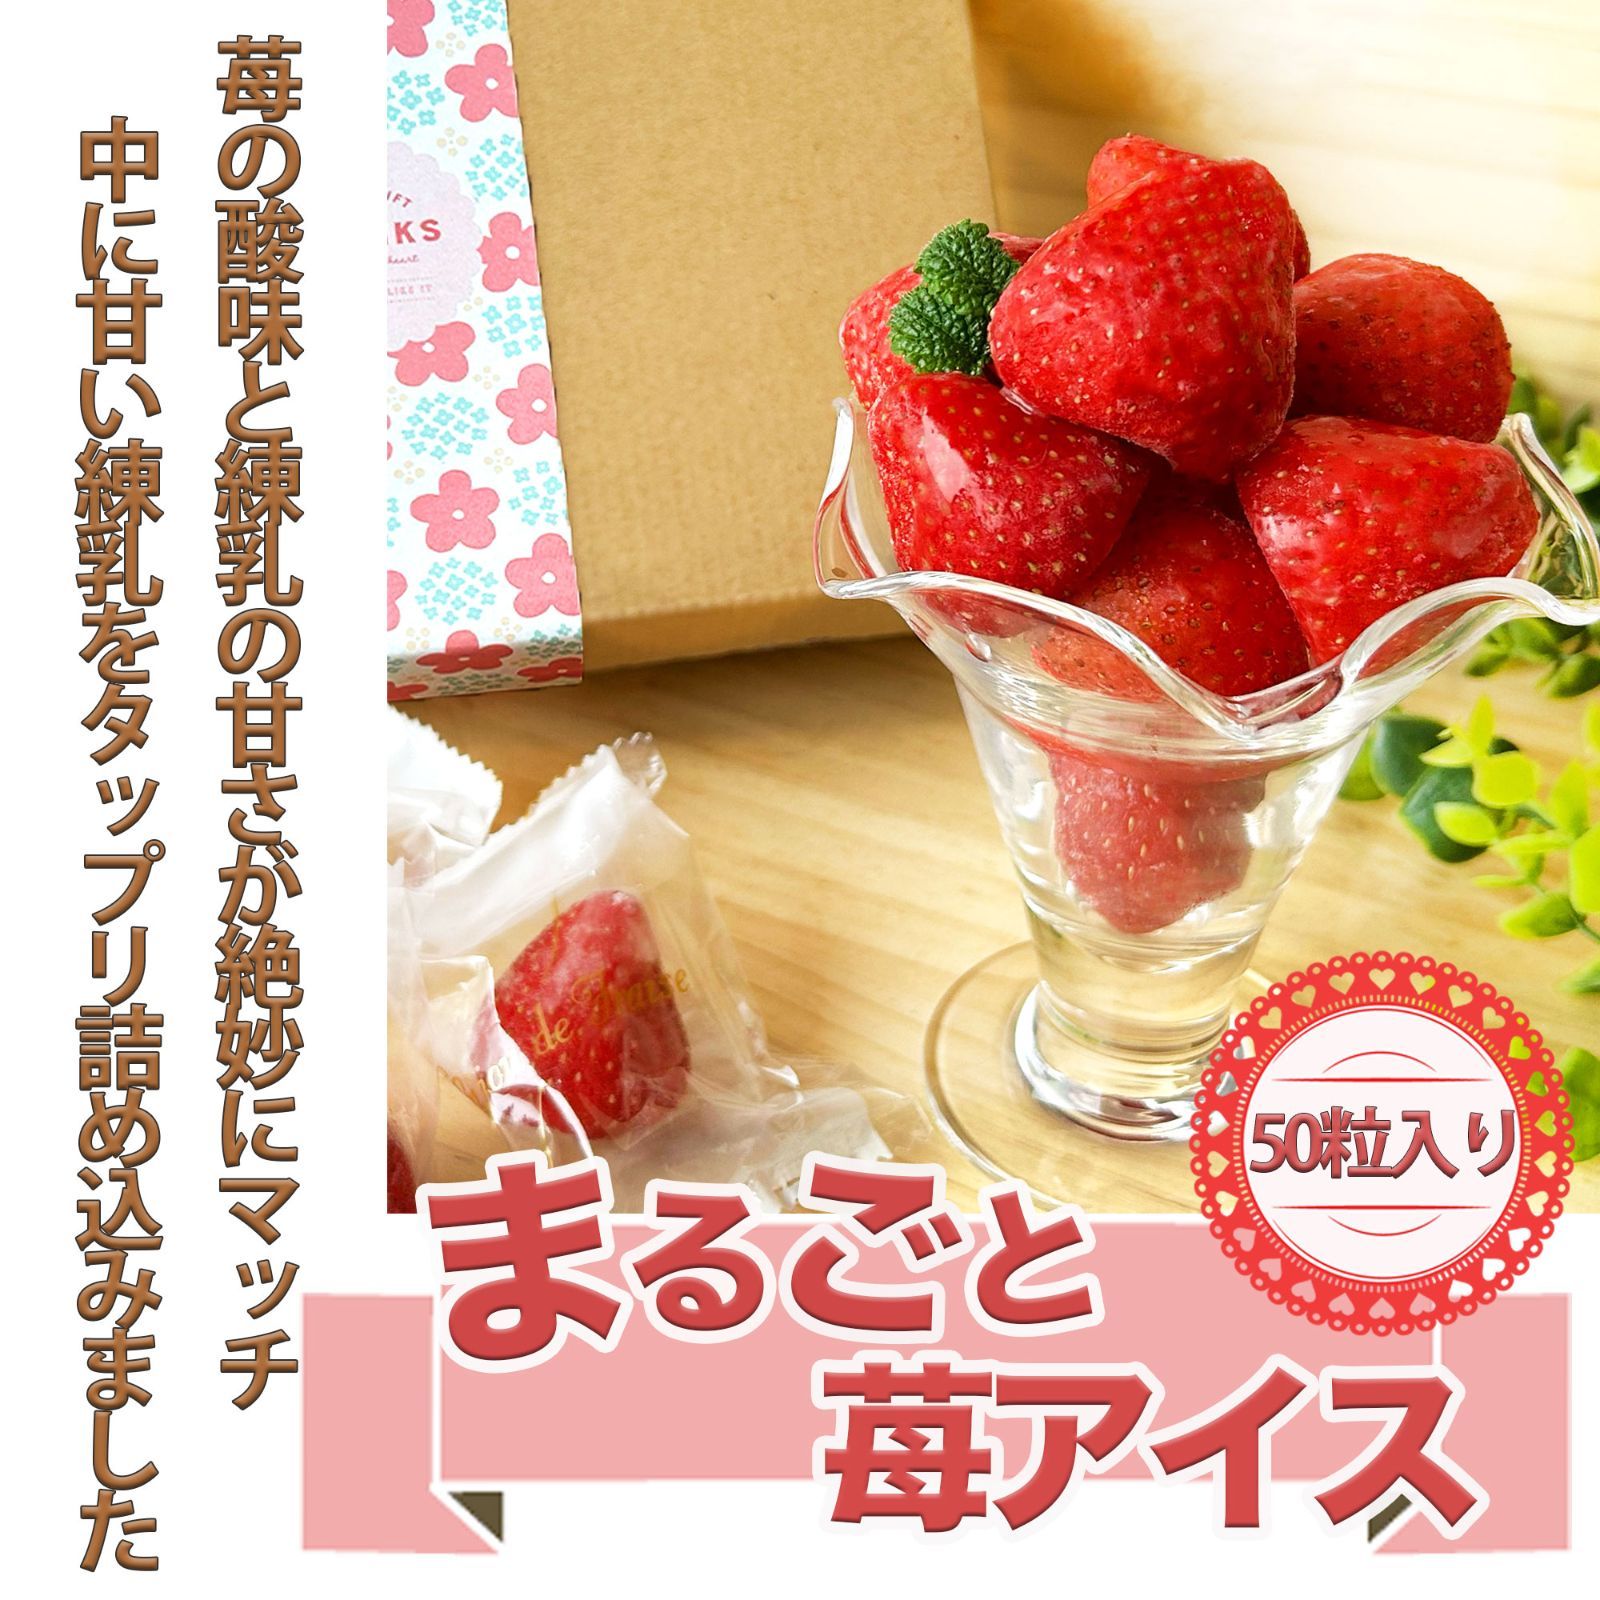 練乳 苺 いちご アイス 50粒 （ 練乳クリーム入り ） いちごまるごと アイス 練乳入り アイス アイスクリーム いちご　ギフトにもおすすめです。strawberry-0